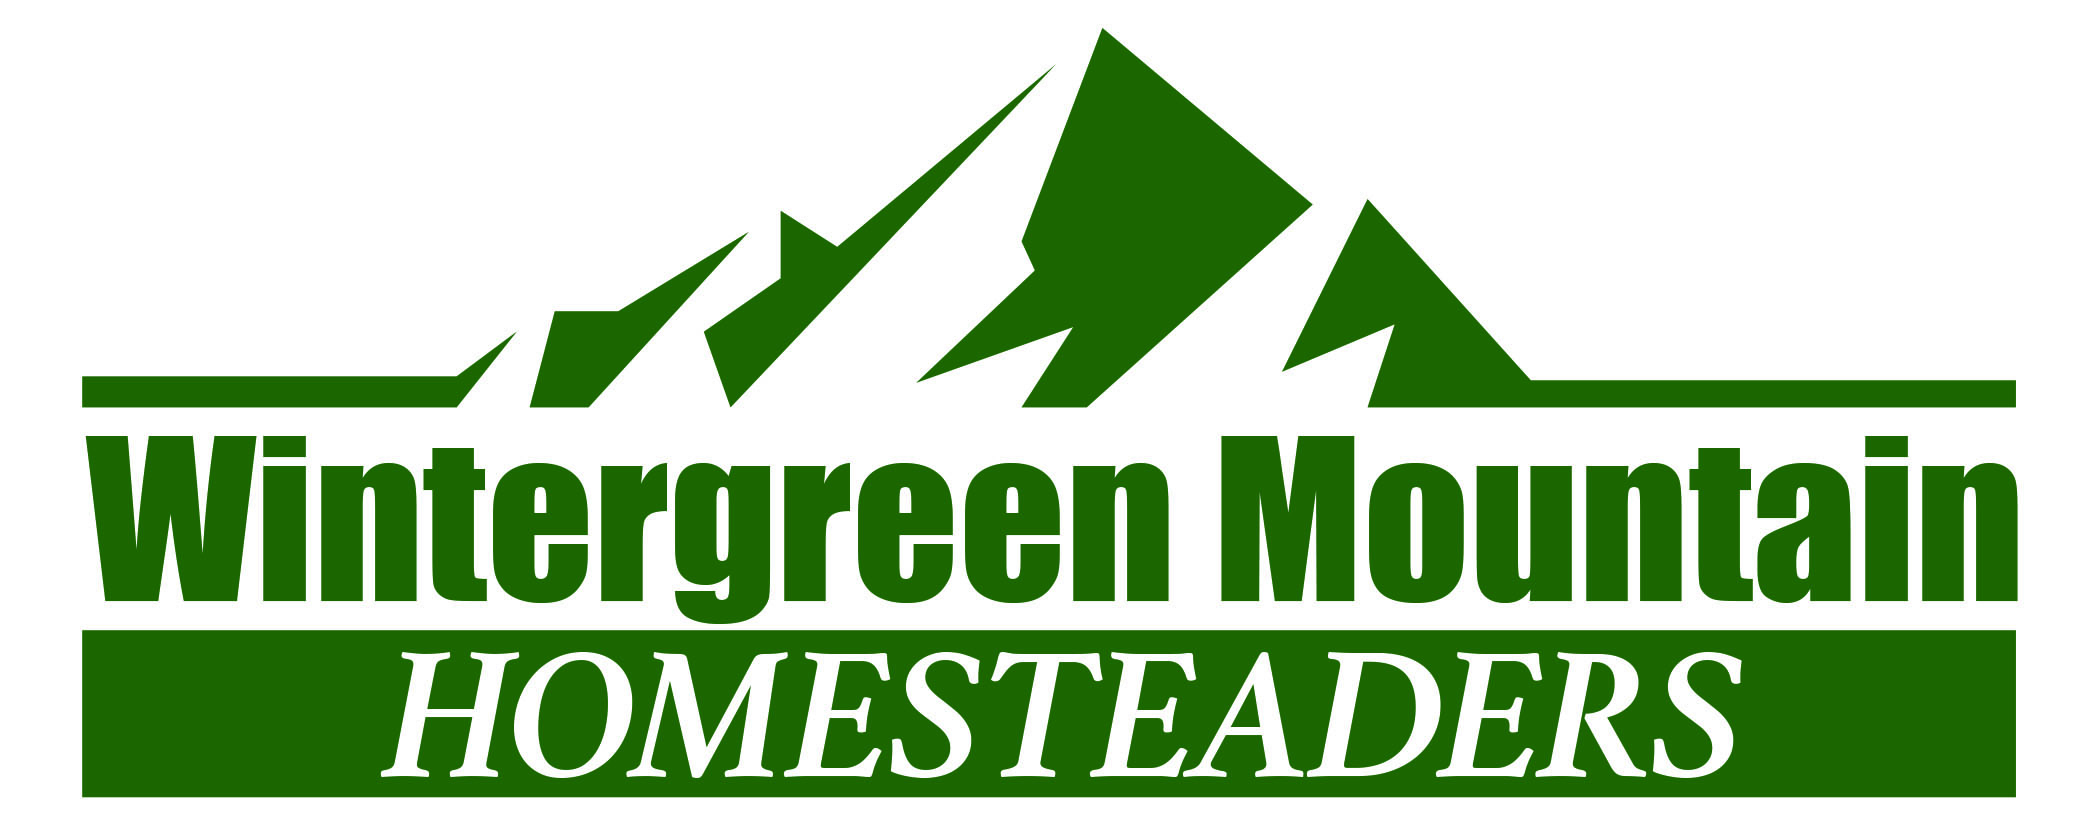 Wintergreen Mountain Homesteaders